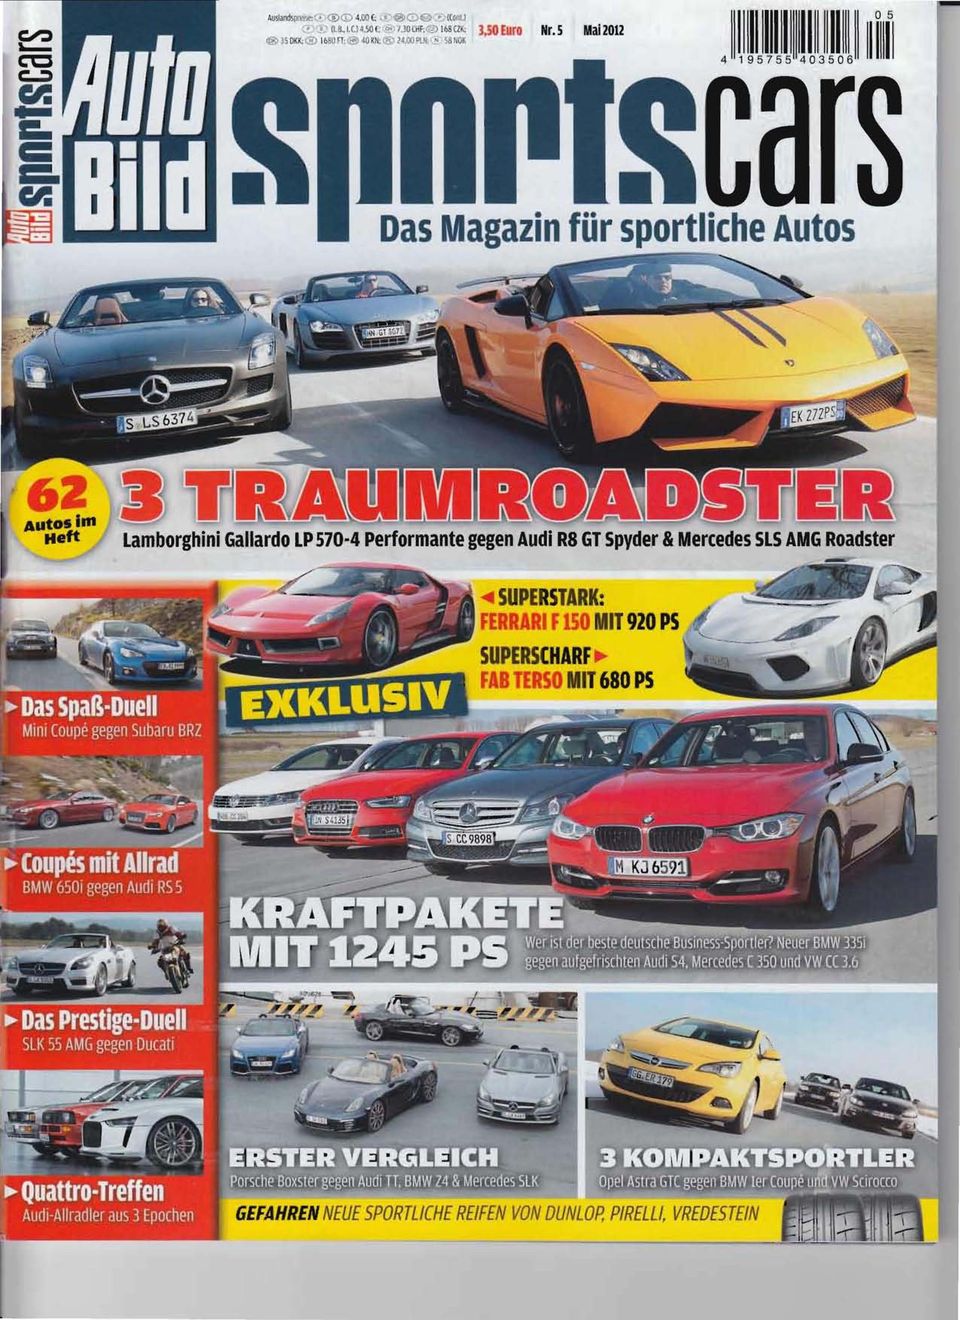 Das Magazin für sportliche Autos Lamborghini Gallardo LP 570-4 Performante gegen Audi R8 GY Spyder &Mercedes SLS AMG